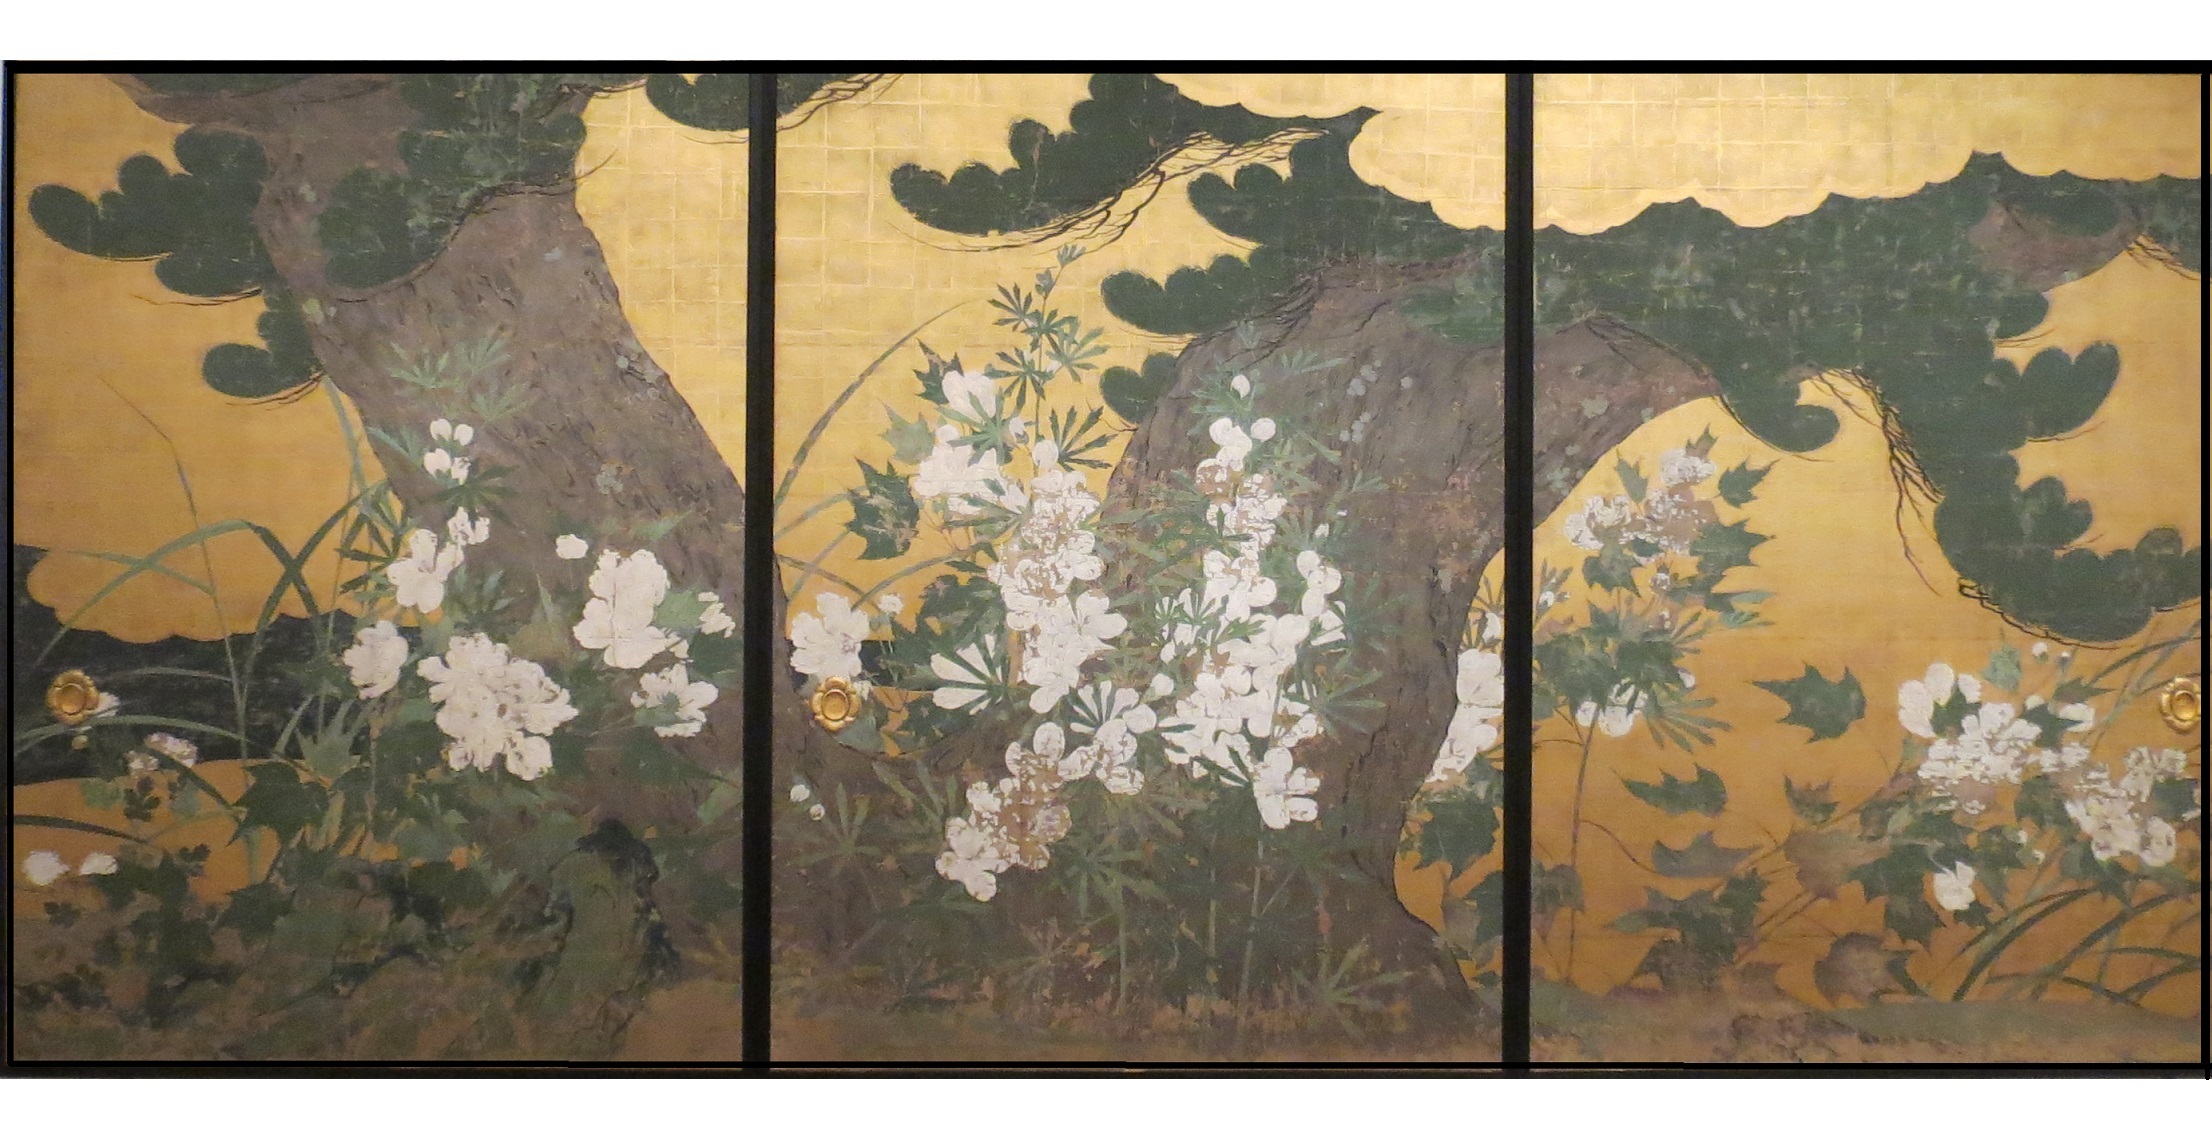 国宝「松に黄燭葵及菊図」智積院蔵の想定復元模写